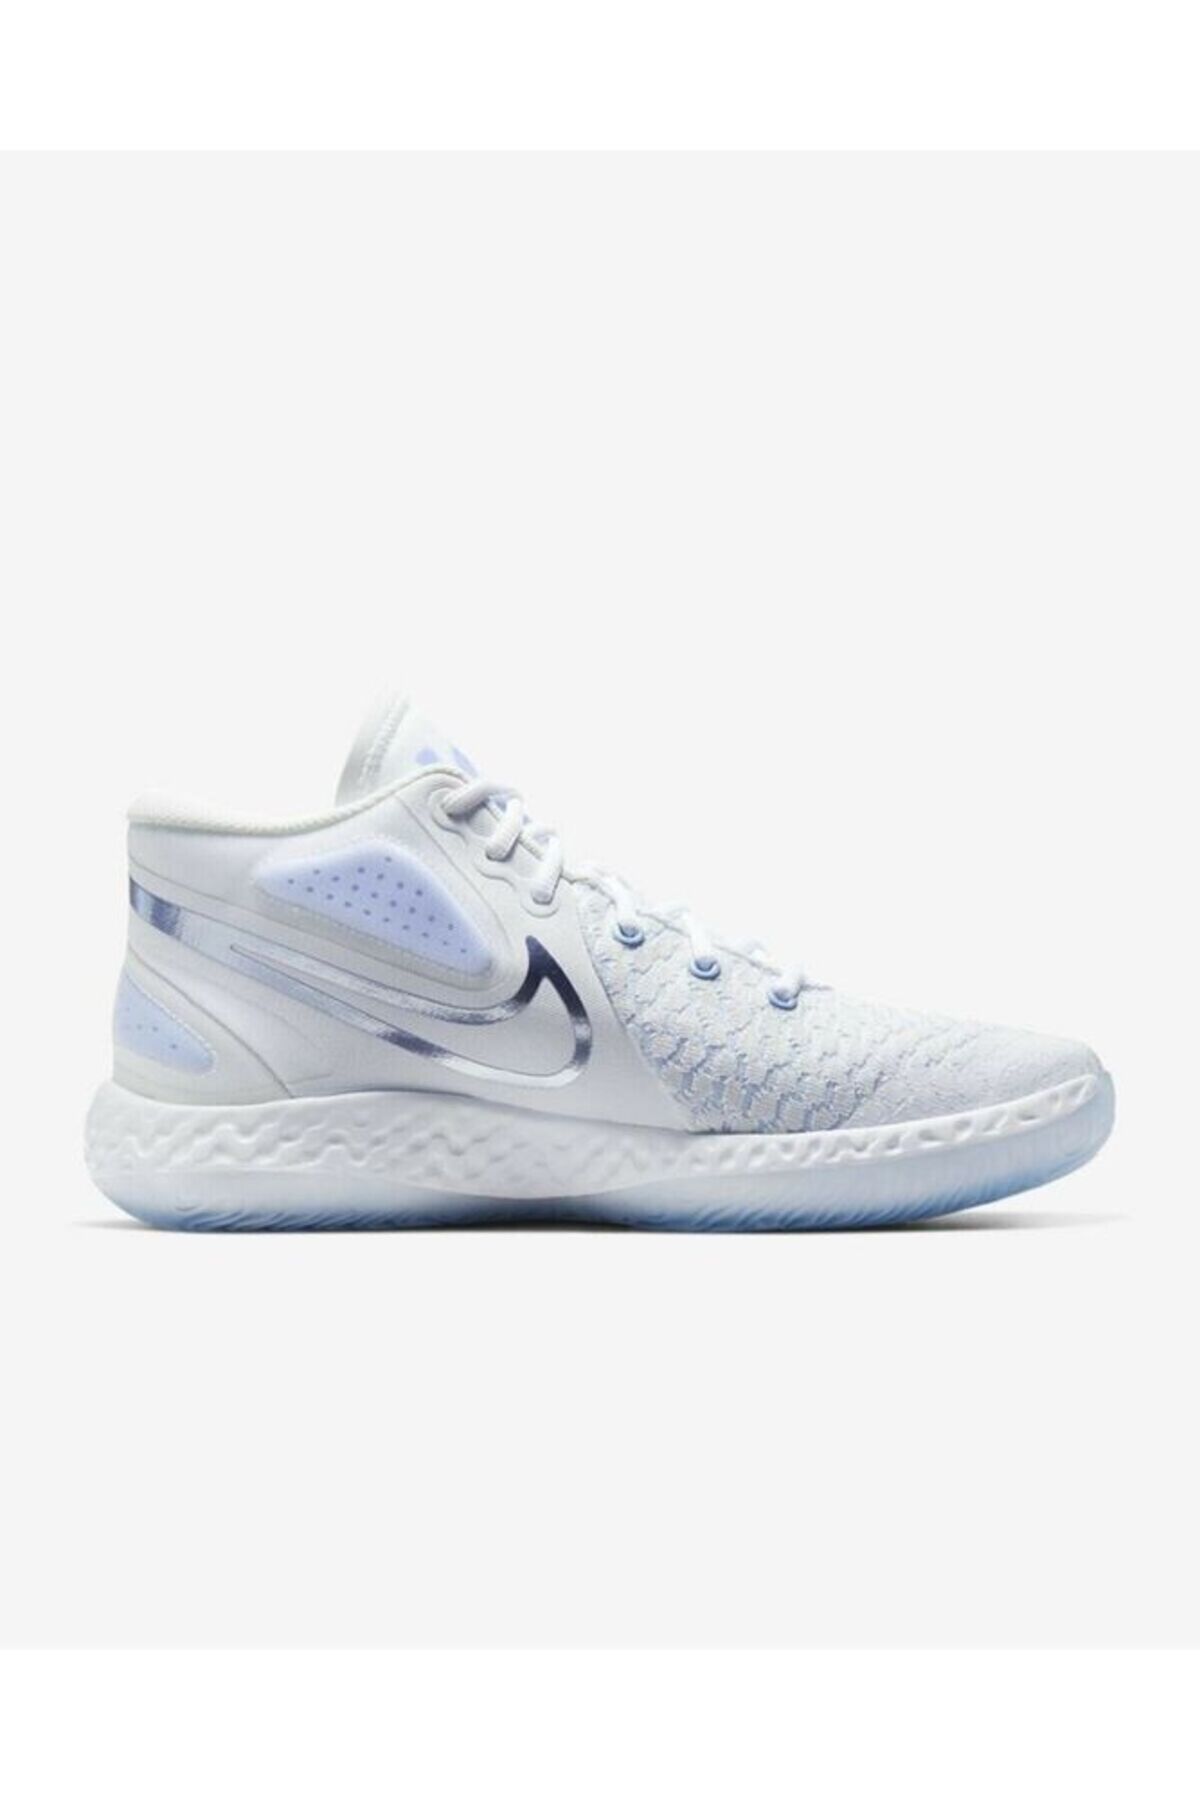 Nike Kd Trey 5 Vııı Basketbol Ayakkabısı Ck2090-100